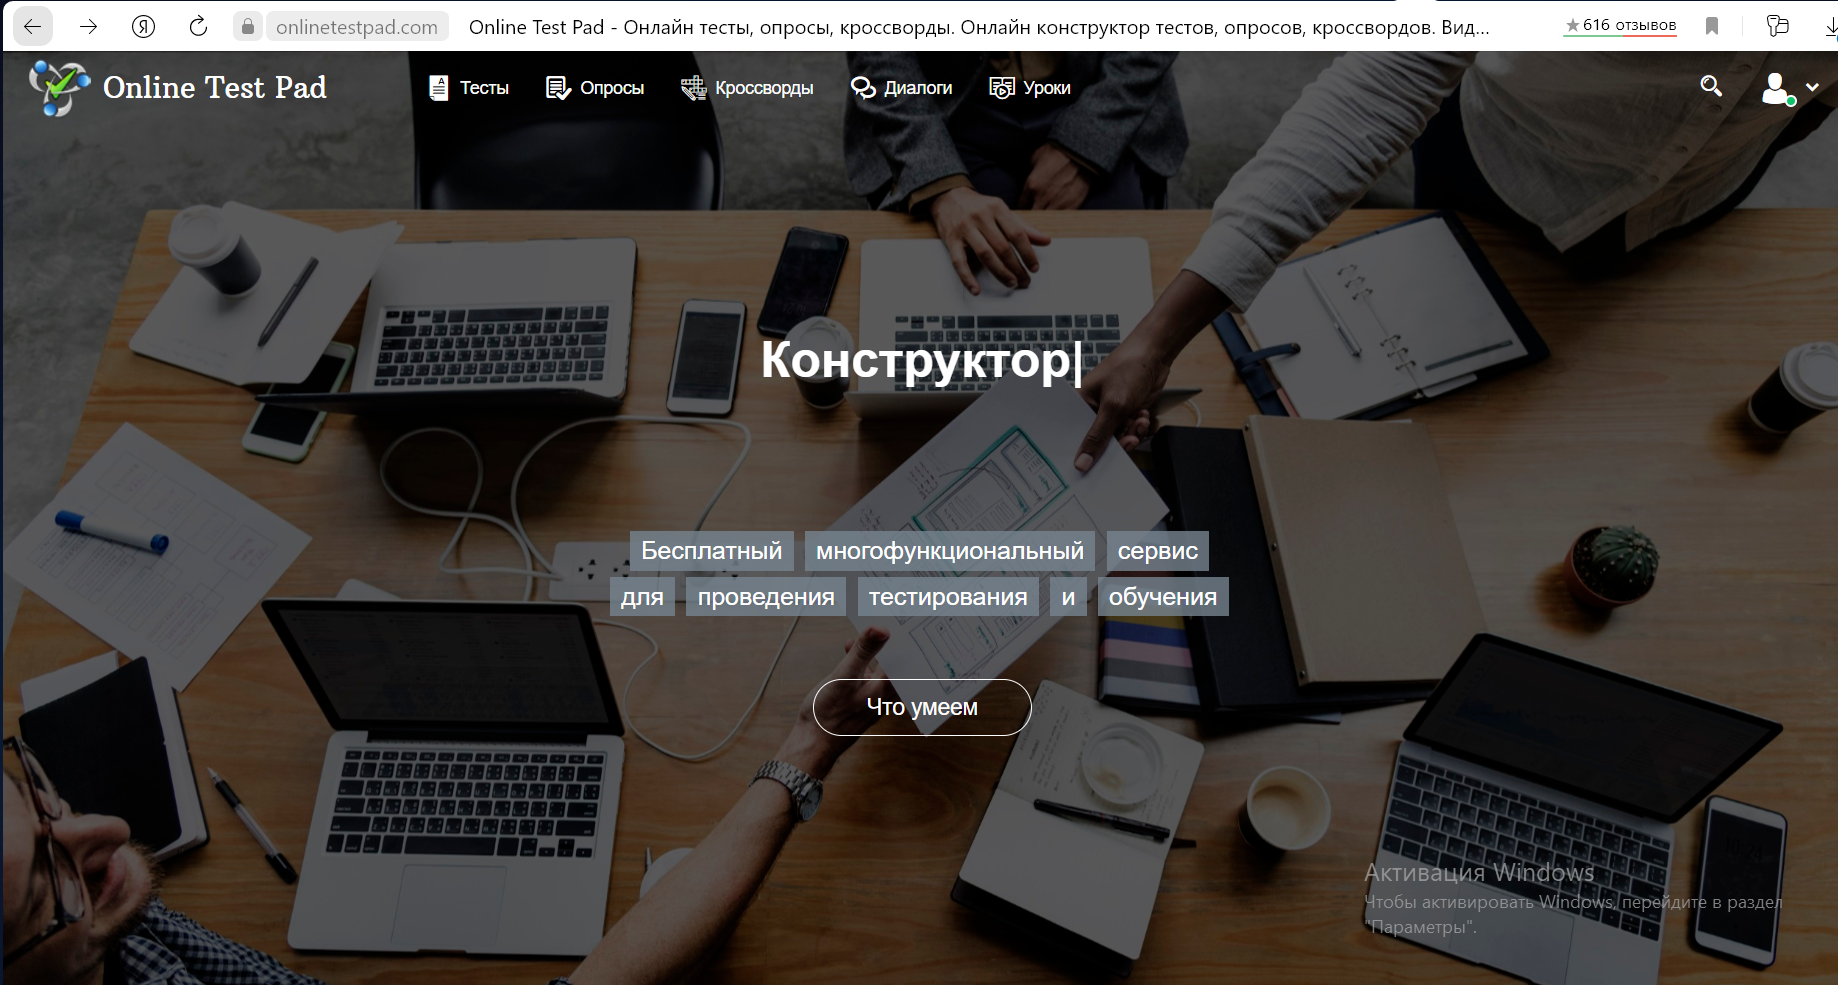 Onlinetestpad com 5 класс. Onlayntest Pad.